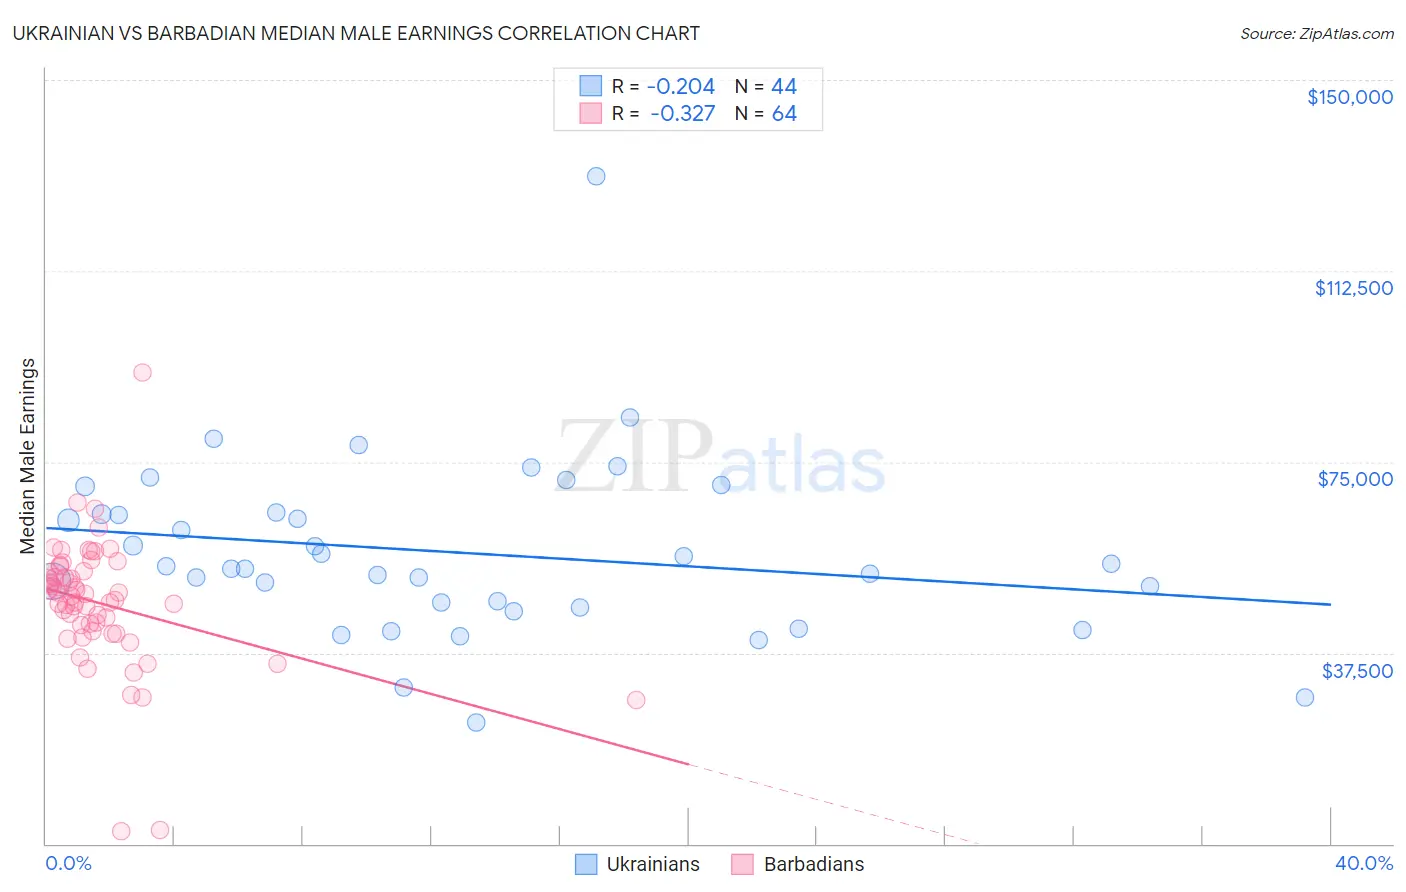 Ukrainian vs Barbadian Median Male Earnings